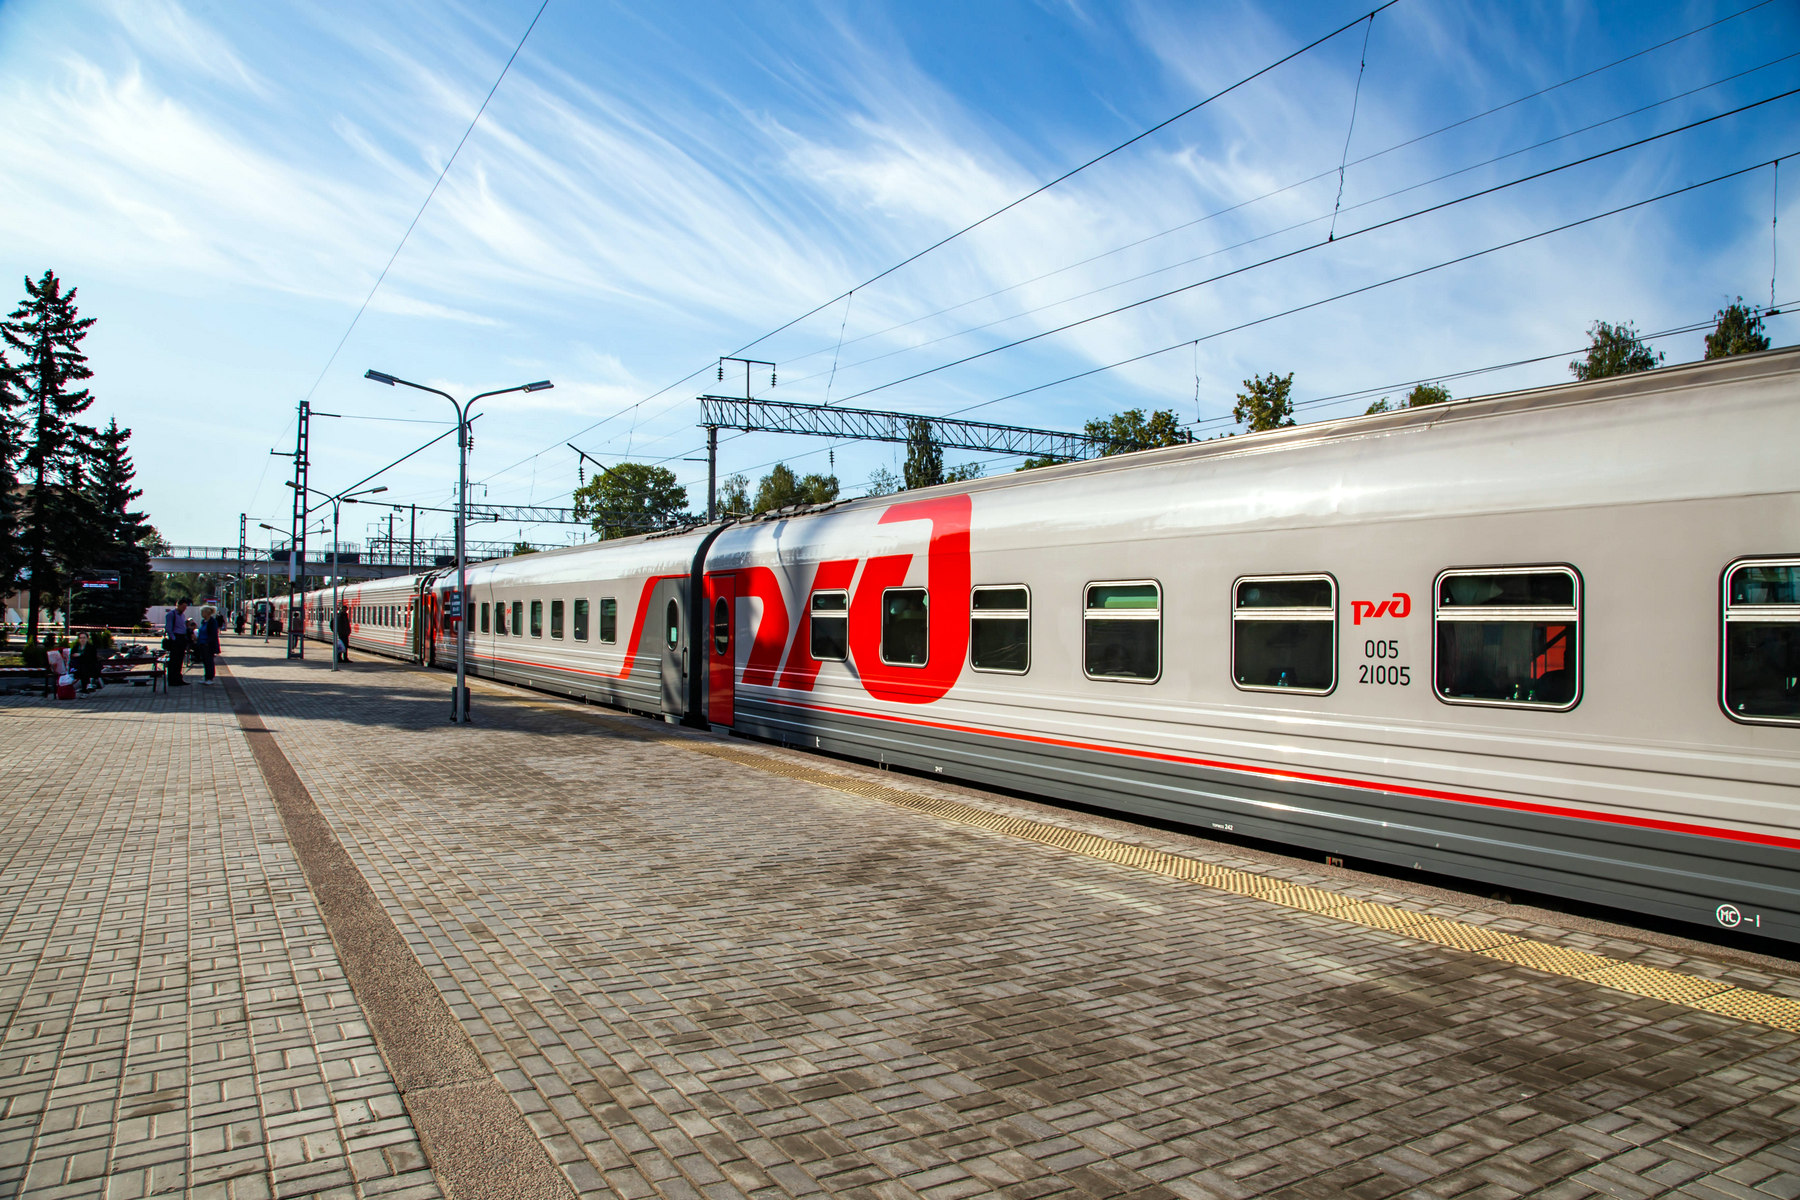 ФПК этим летом назначит на четверть больше доппоездов, в том числе 1,5 тысячи - на юг РФ